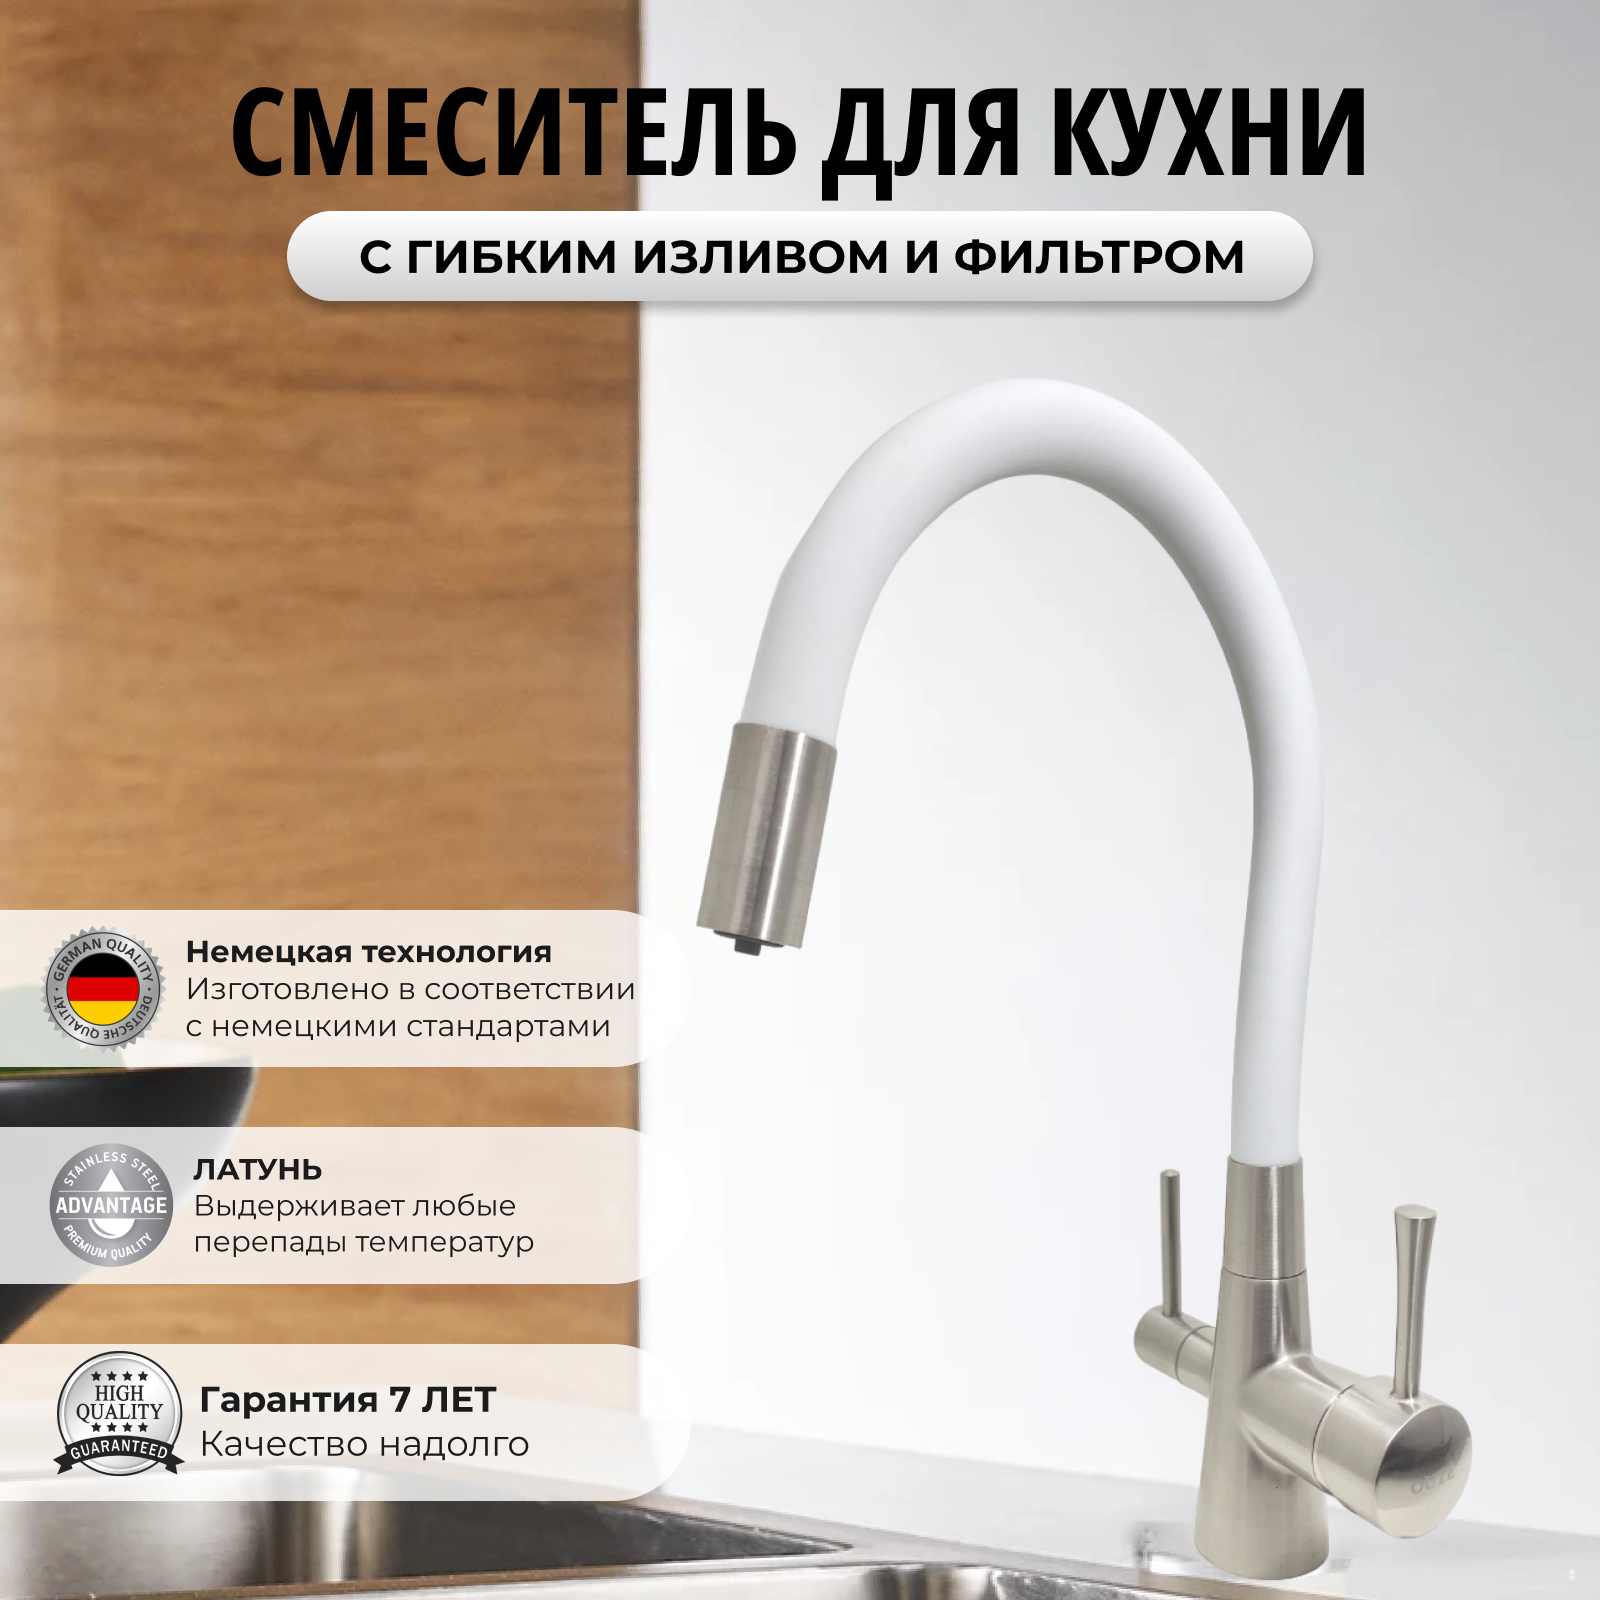 Смеситель для кухни с фильтром для питьевой воды/ Смеситель для кухни с гибким изливом/ Латунь/ Белый сатин/ Кухонный смеситель